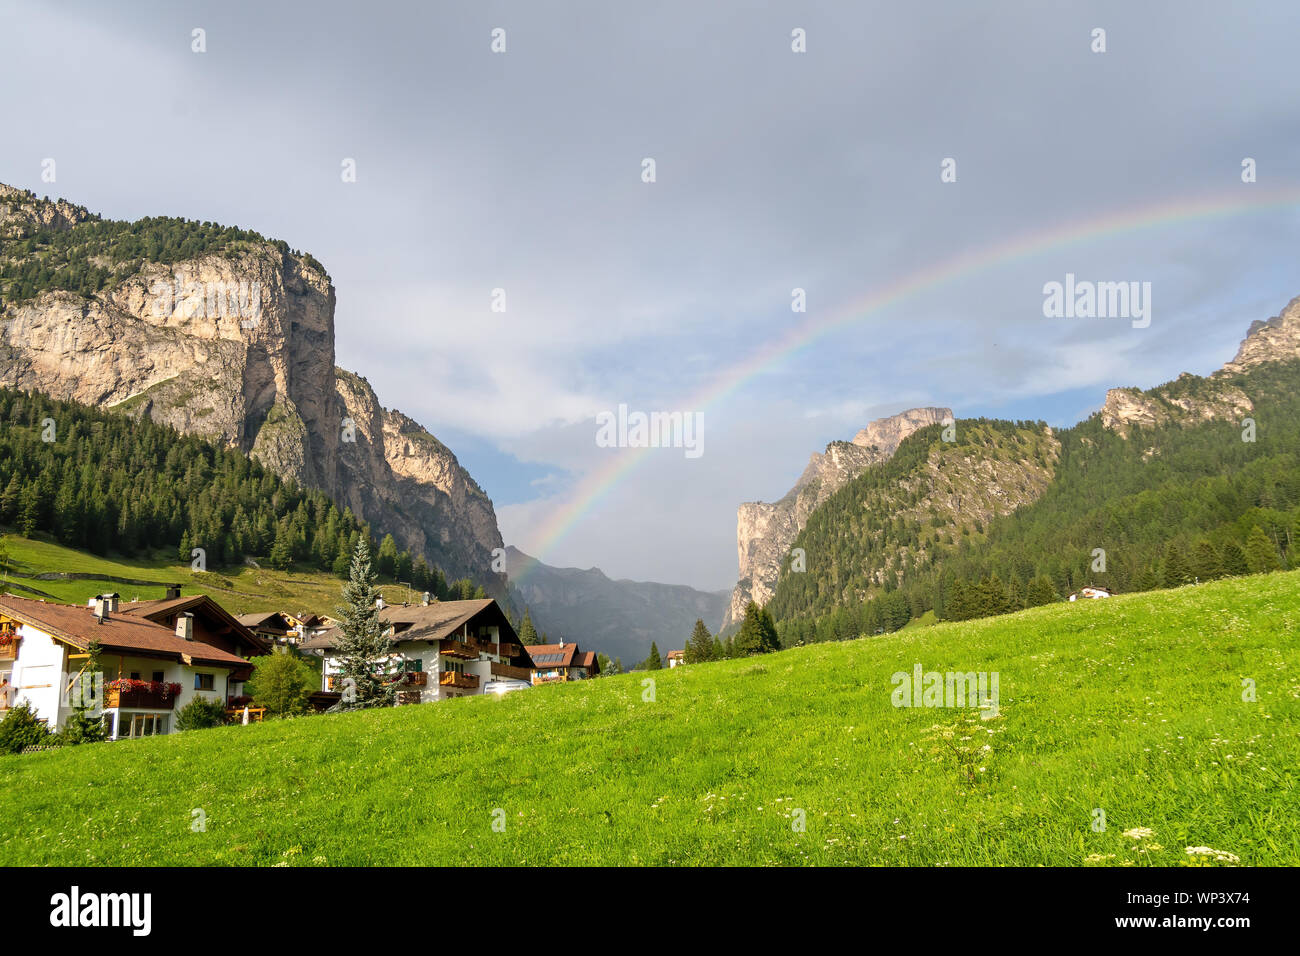 Landschaft im Sommer Aussicht auf die Dolomiten. Selva di Val Gardena, Italien auf der Skipiste, nach dem Regen mit echten Regenbogen. Stockfoto